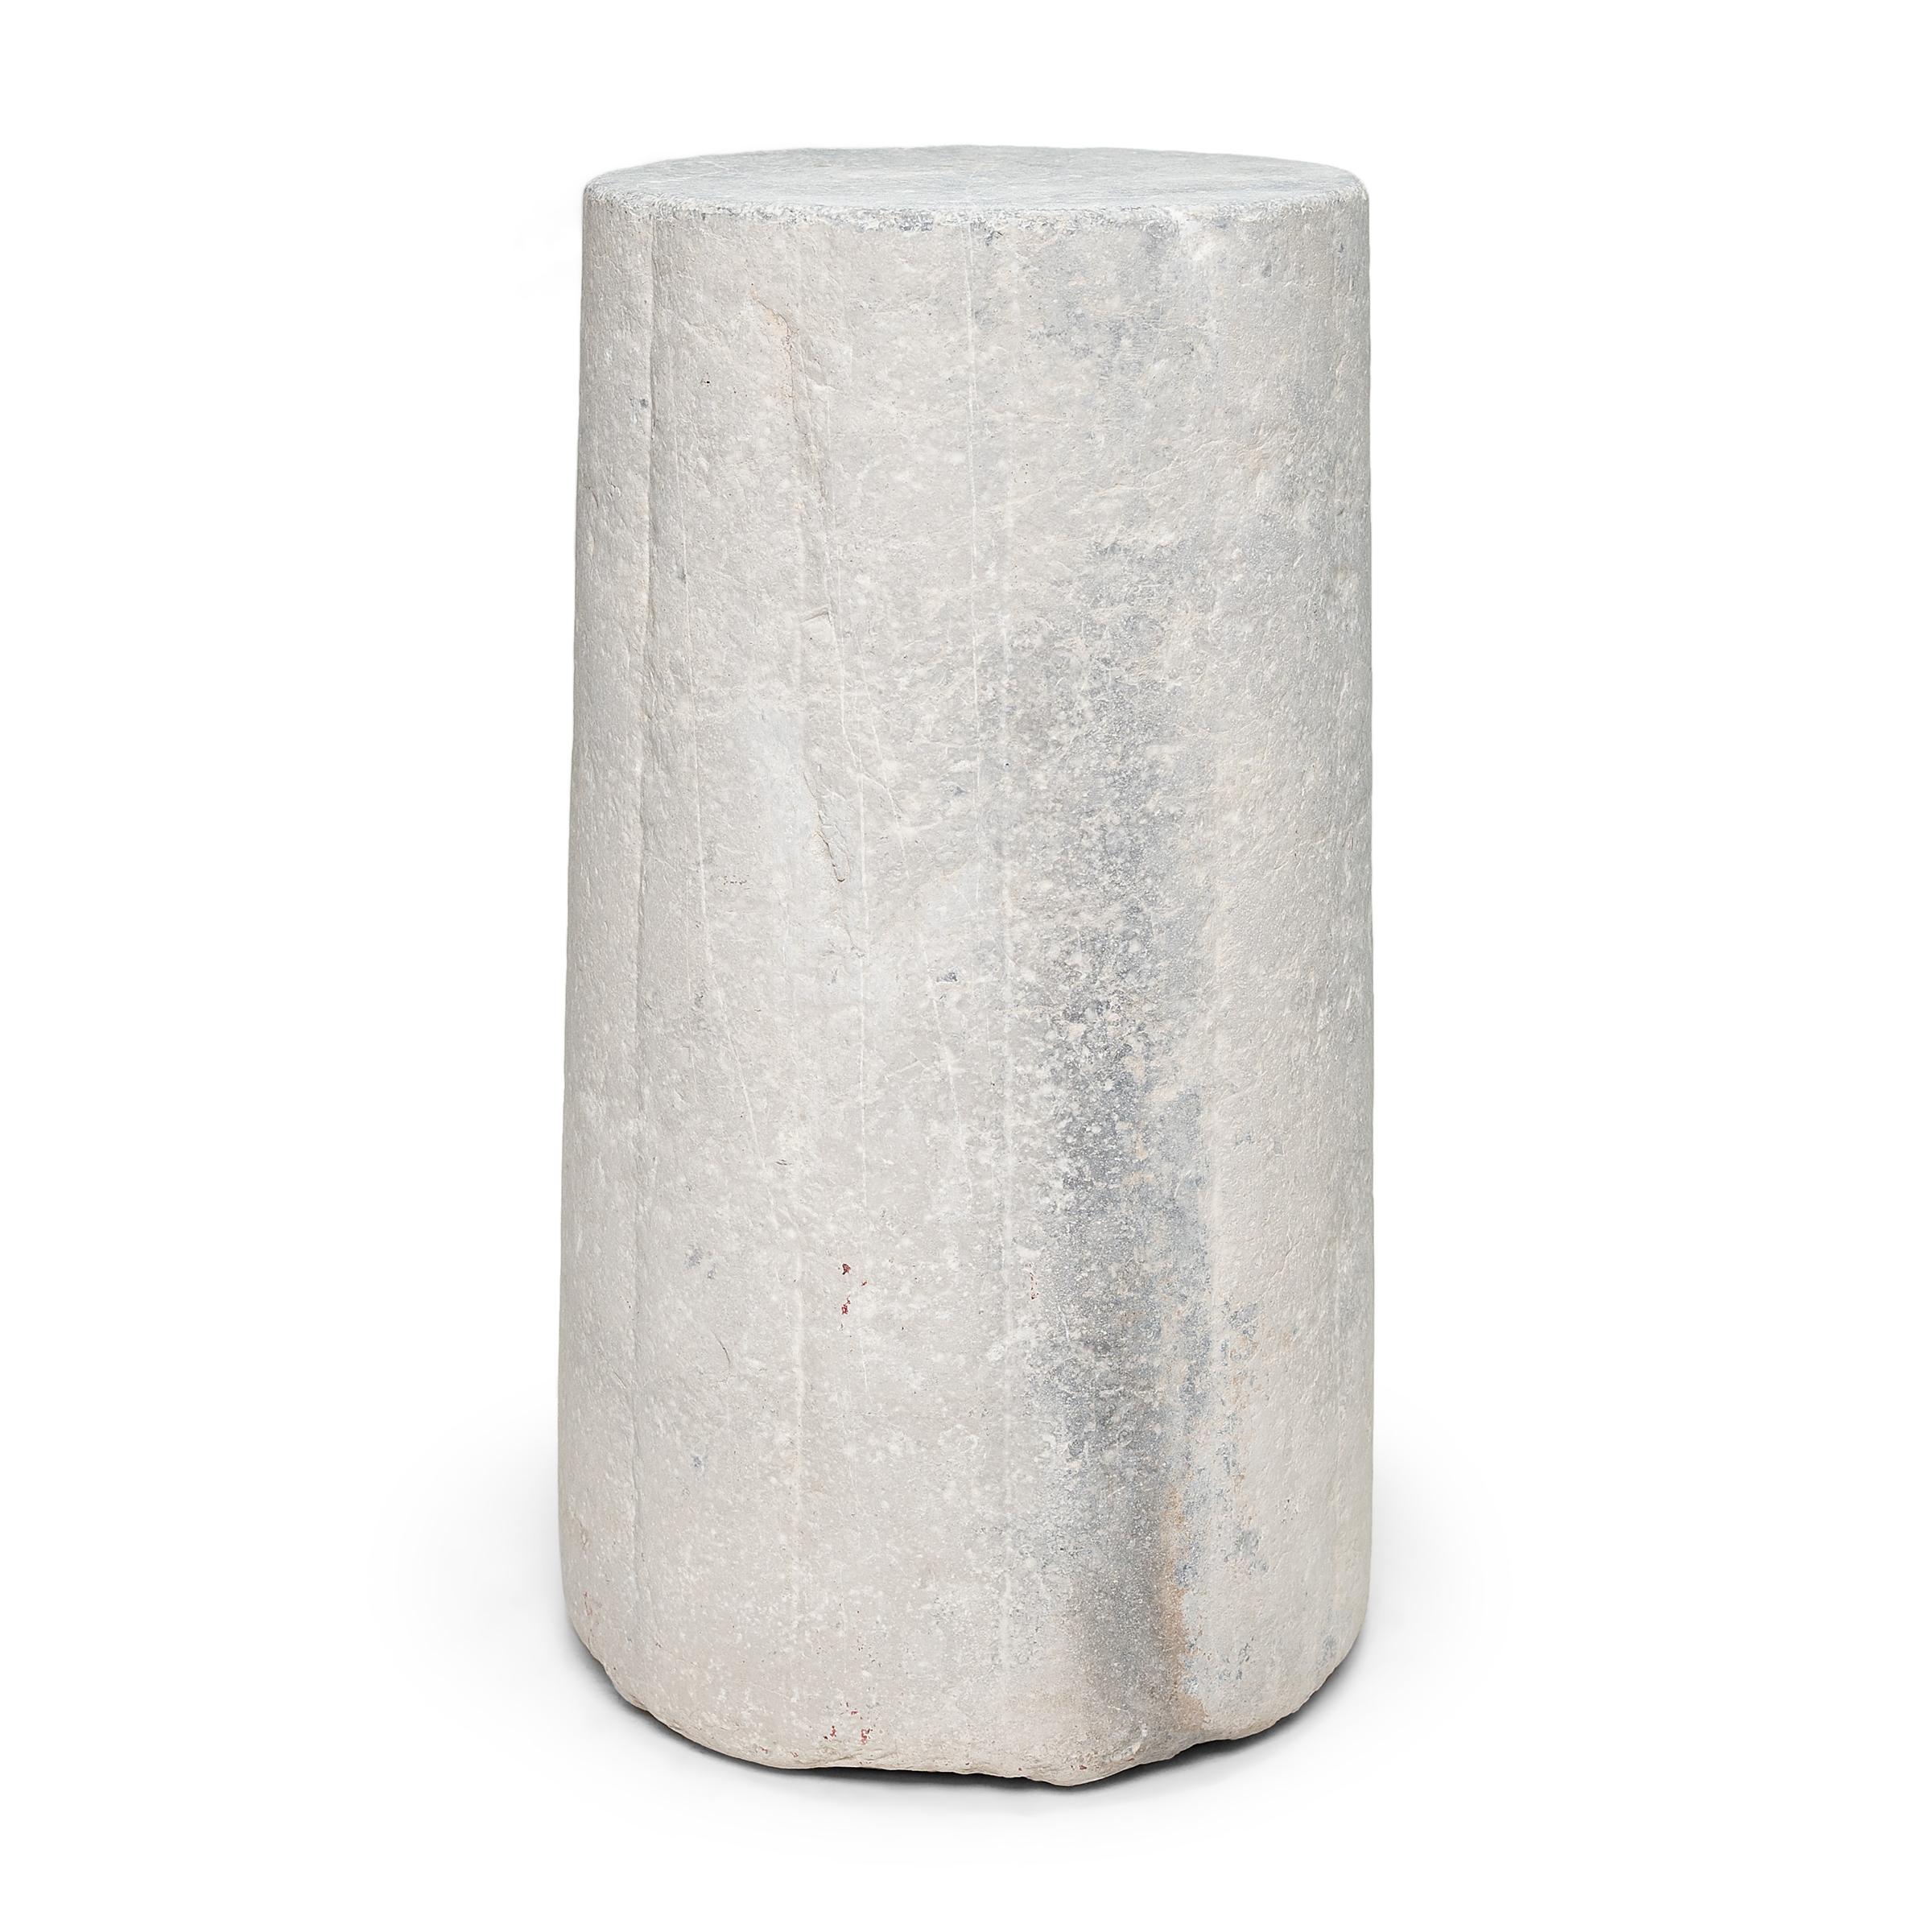 Ce piédestal en pierre inhabituel est en fait une pierre de moulin cylindrique datant de la fin du XIXe siècle. Sculptée à la main dans une pierre calcaire massive à la surface texturée et nervurée, cette pierre était utilisée pour battre le blé et